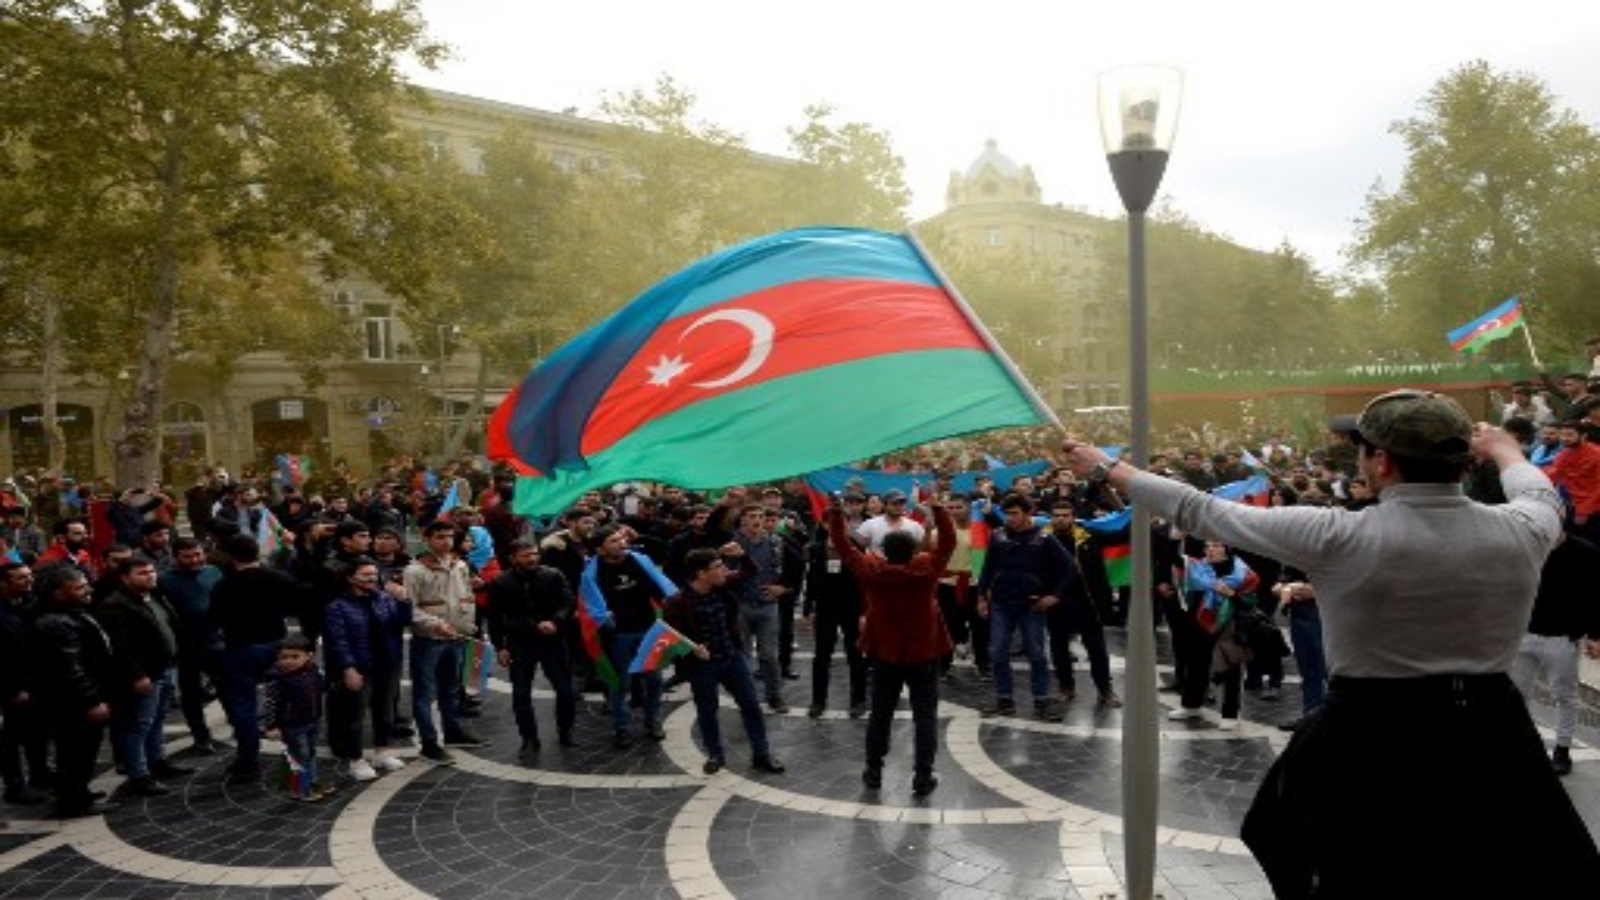 الأذربيجانيون يرفعون علمهم الوطني أثناء احتفالهم في شوارع العاصمة باكو في 10 نوفمبر 2020 ، بعد أن وافقت أرمينيا وأذربيجان على وقف إطلاق النار بعد سلسلة من الانتصارات الأذرية في القتال على منطقة ناغورنو كاراباخ المتنازع عليها